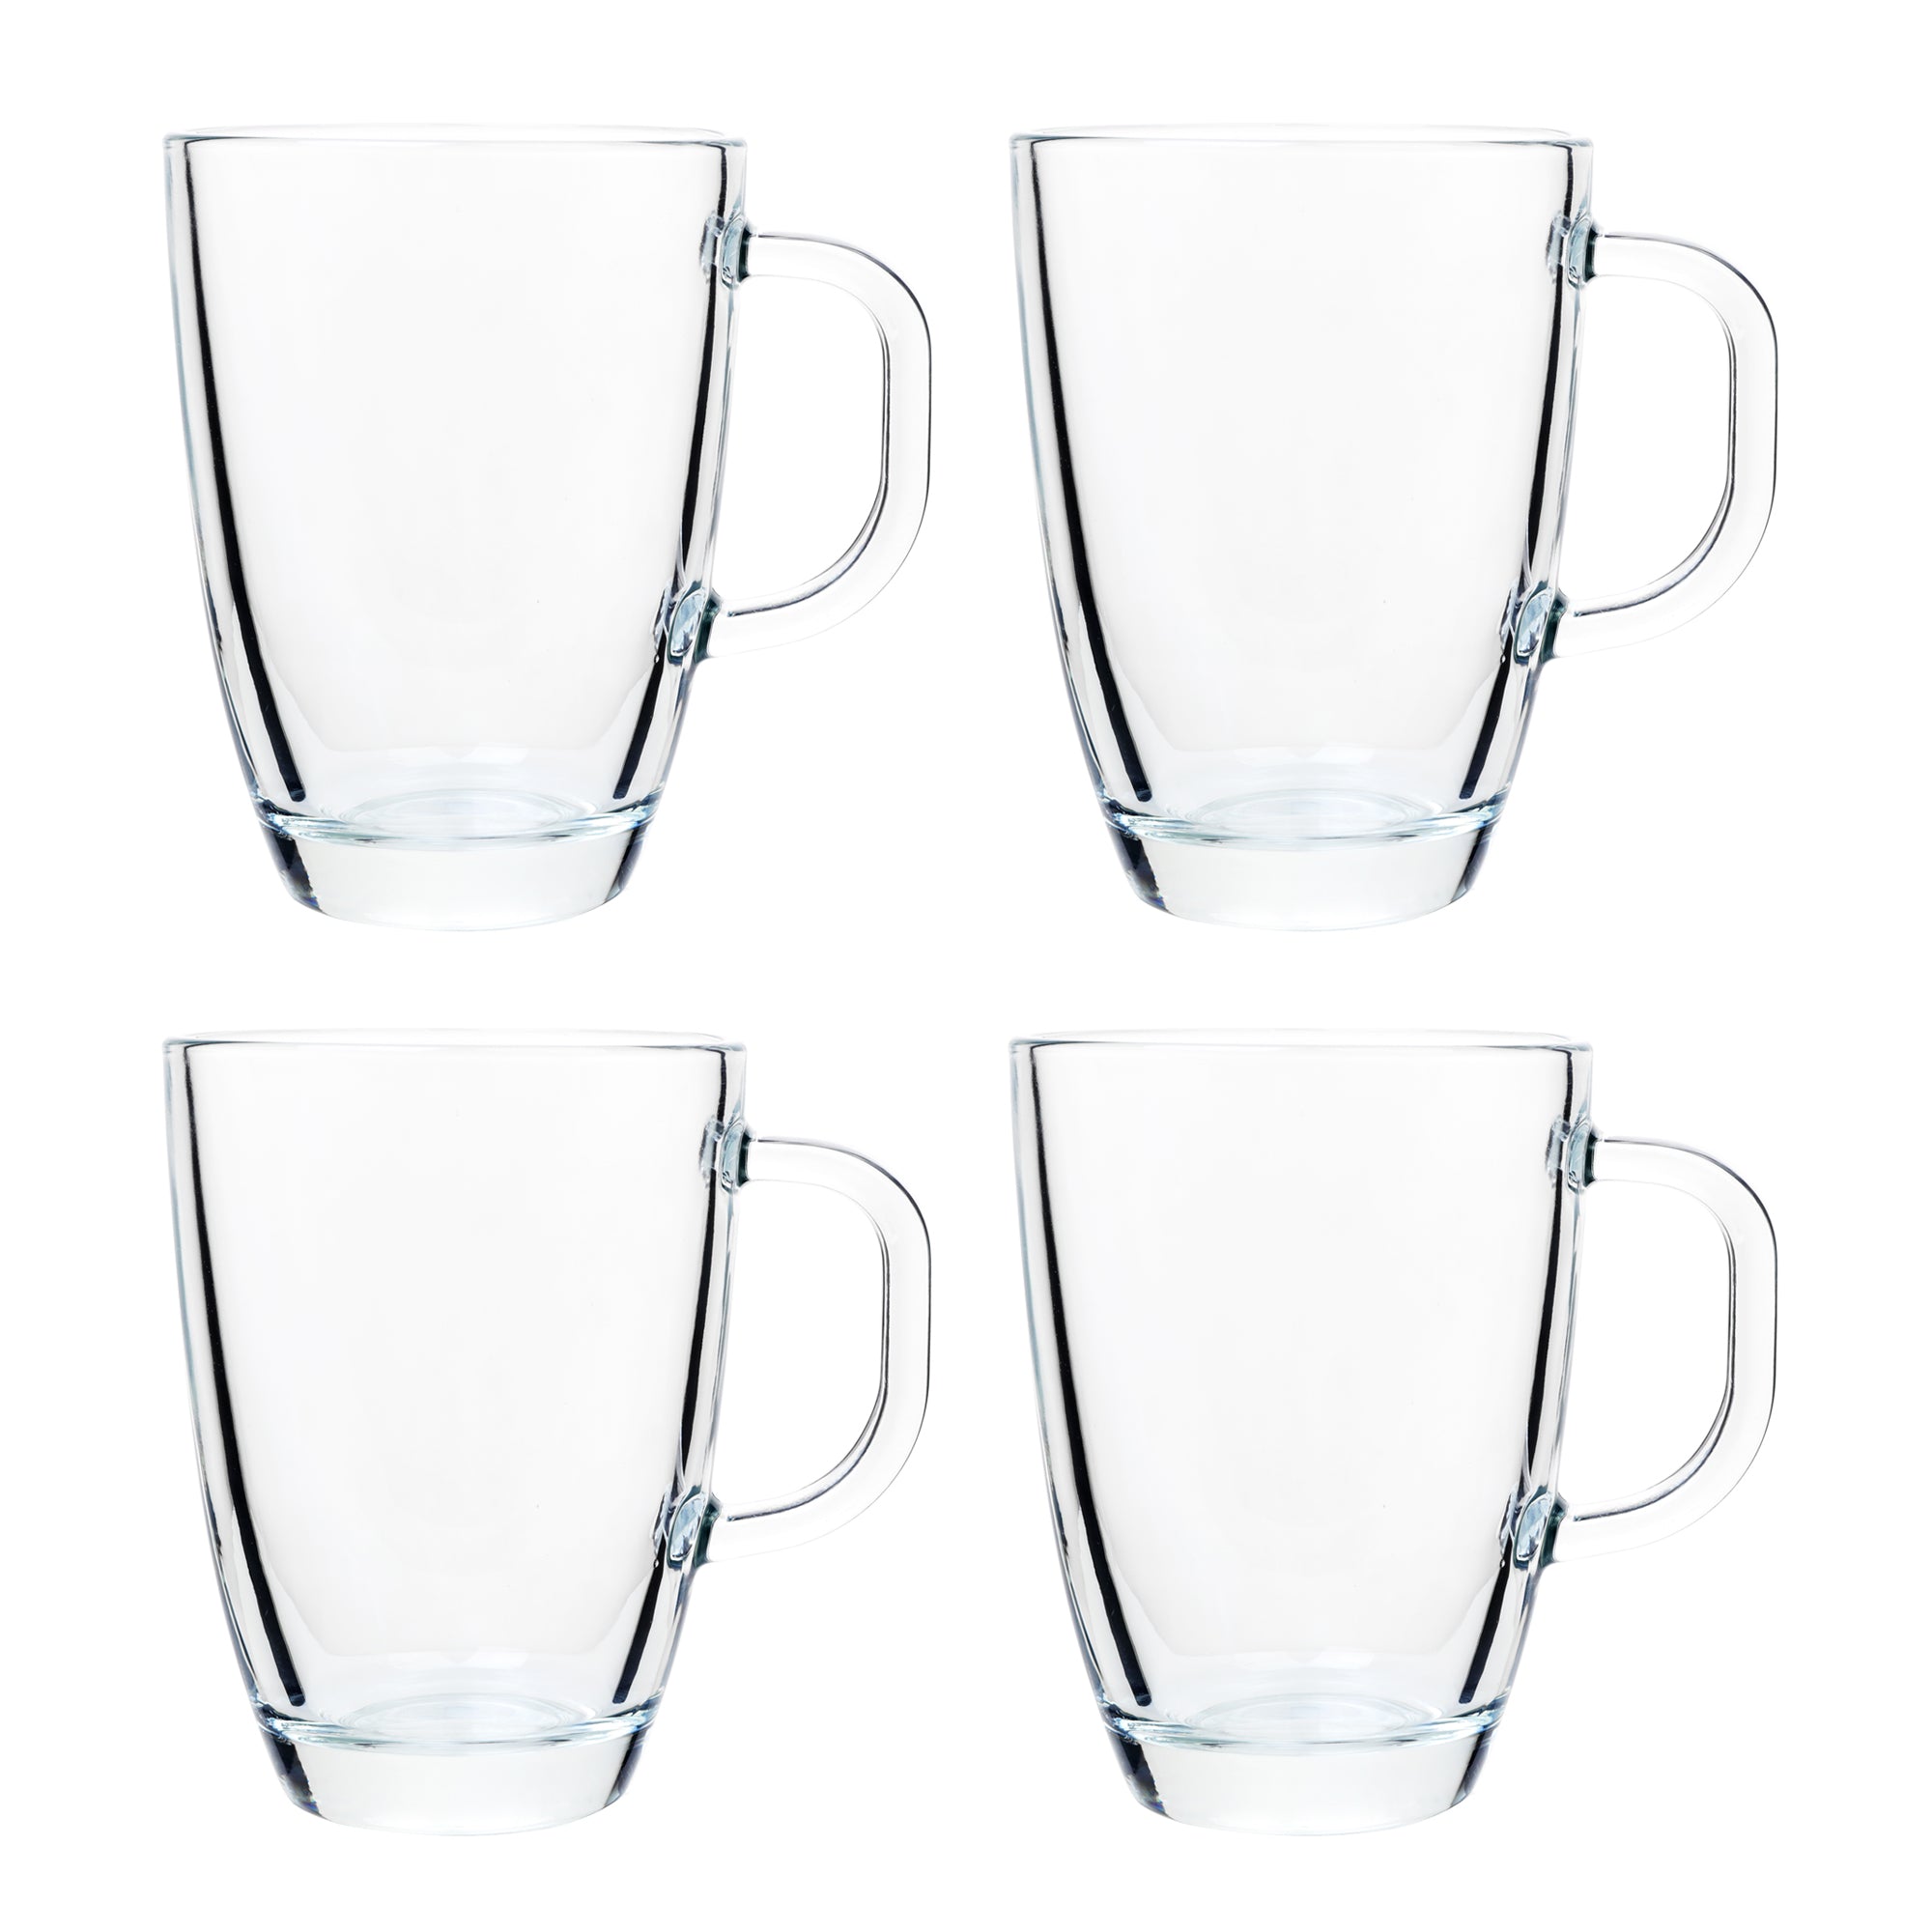 Glass Mugs, Set of Glass Mugs